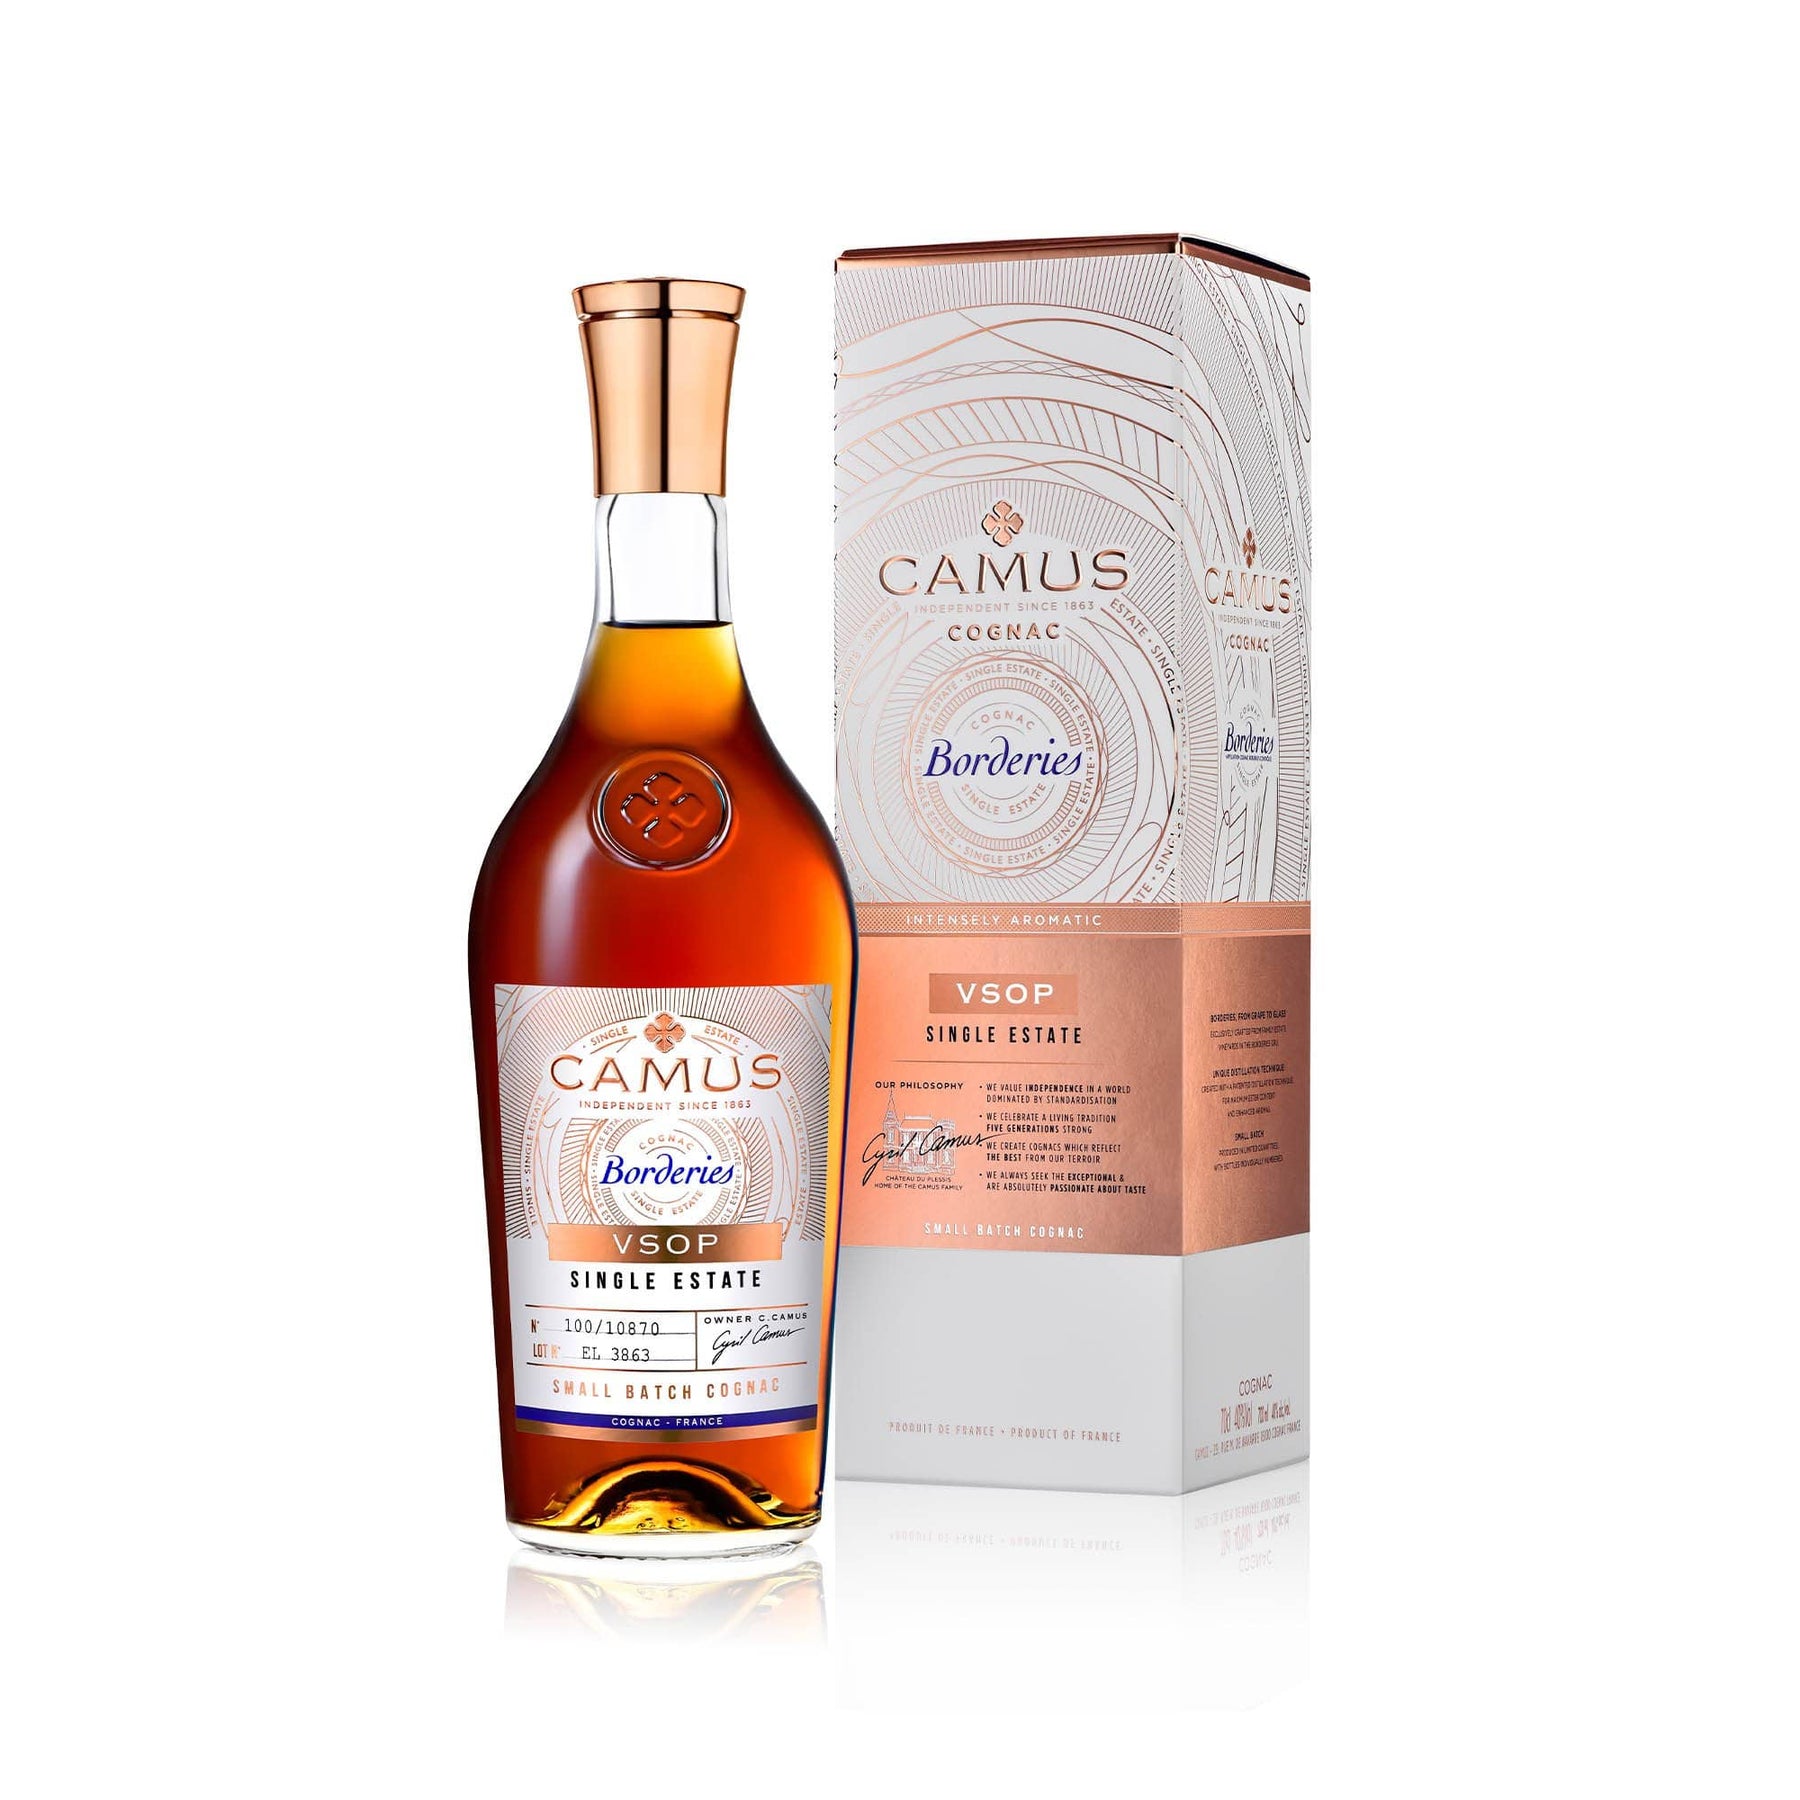 Коньяк camus 0.7 цена. Коньяк Camus Borderies. Camus Cognac VSOP. Коньяк Камю Бордери. Коньяк Камю VSOP.